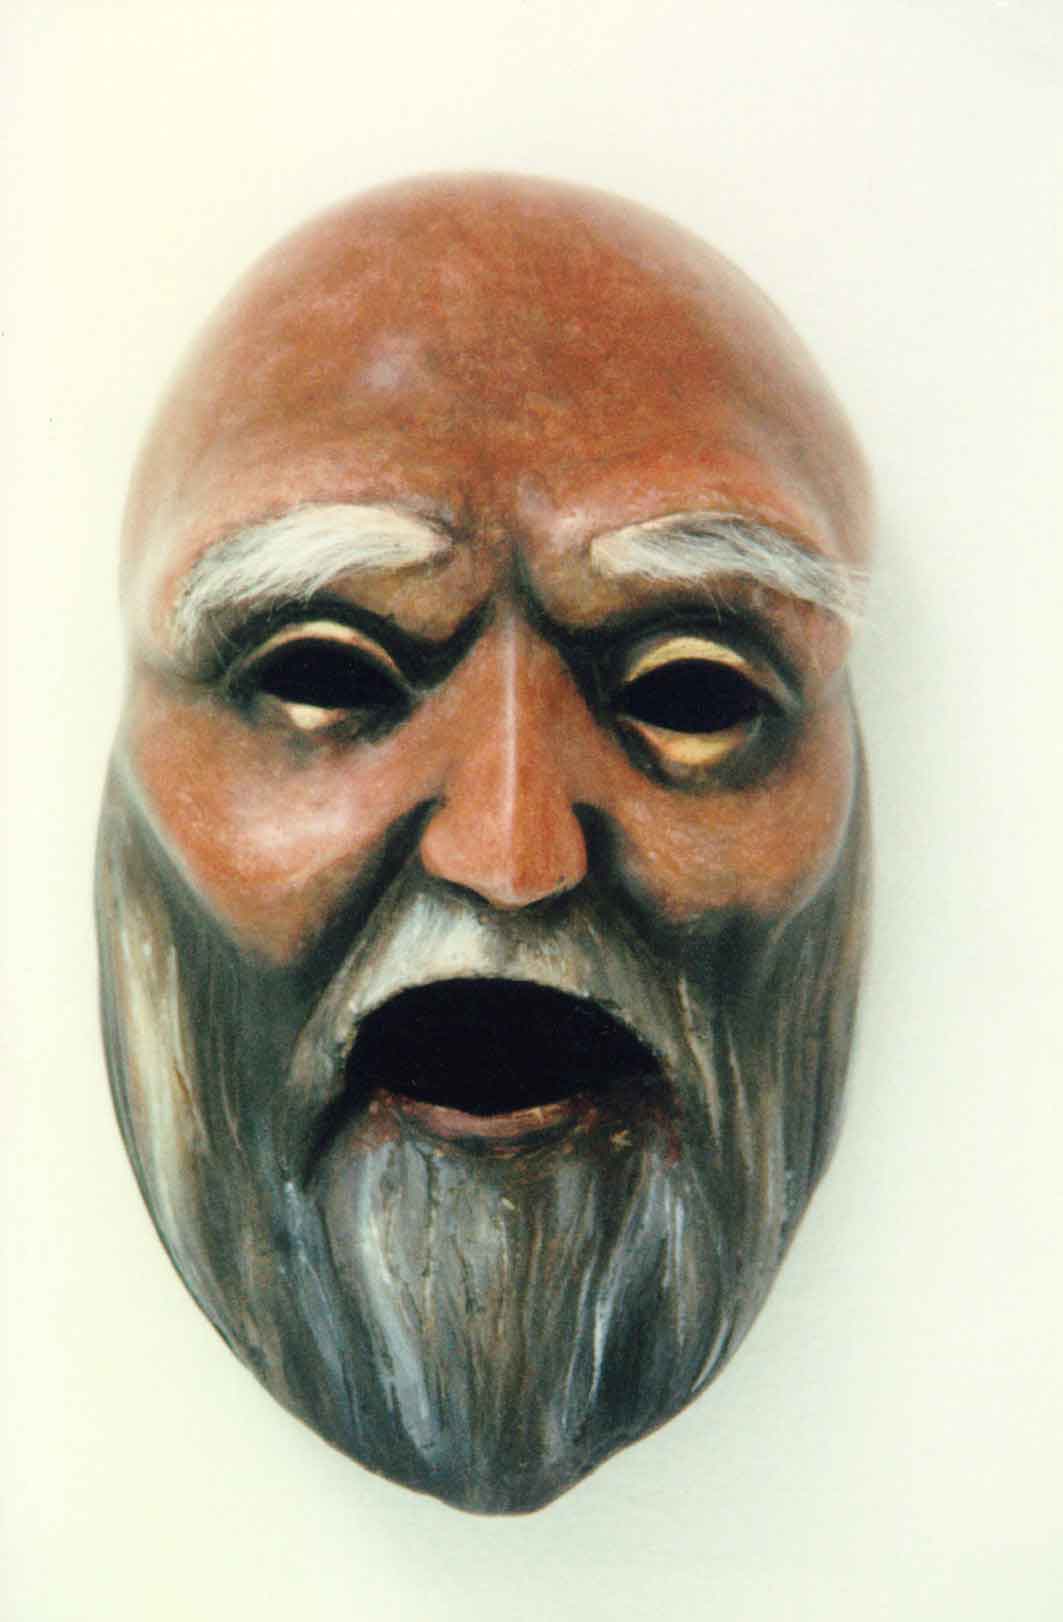 greek theatre masks tragedy